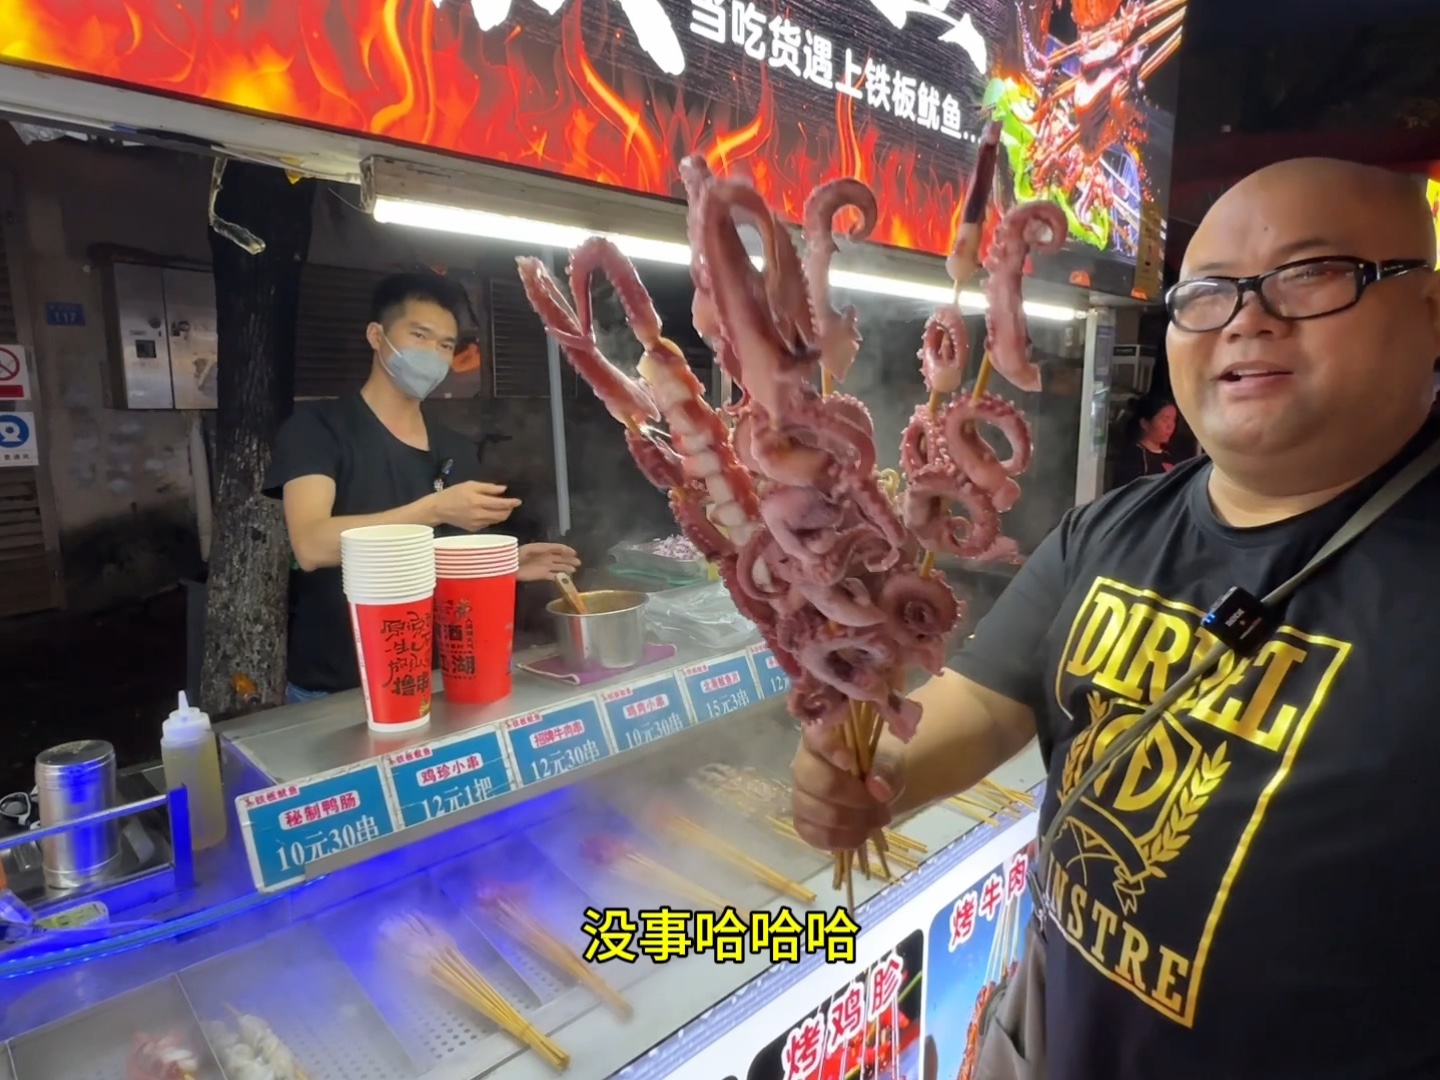 300块钱在广州包一个鱿鱼摊，当成自助随便吃，普通人能回本吗？